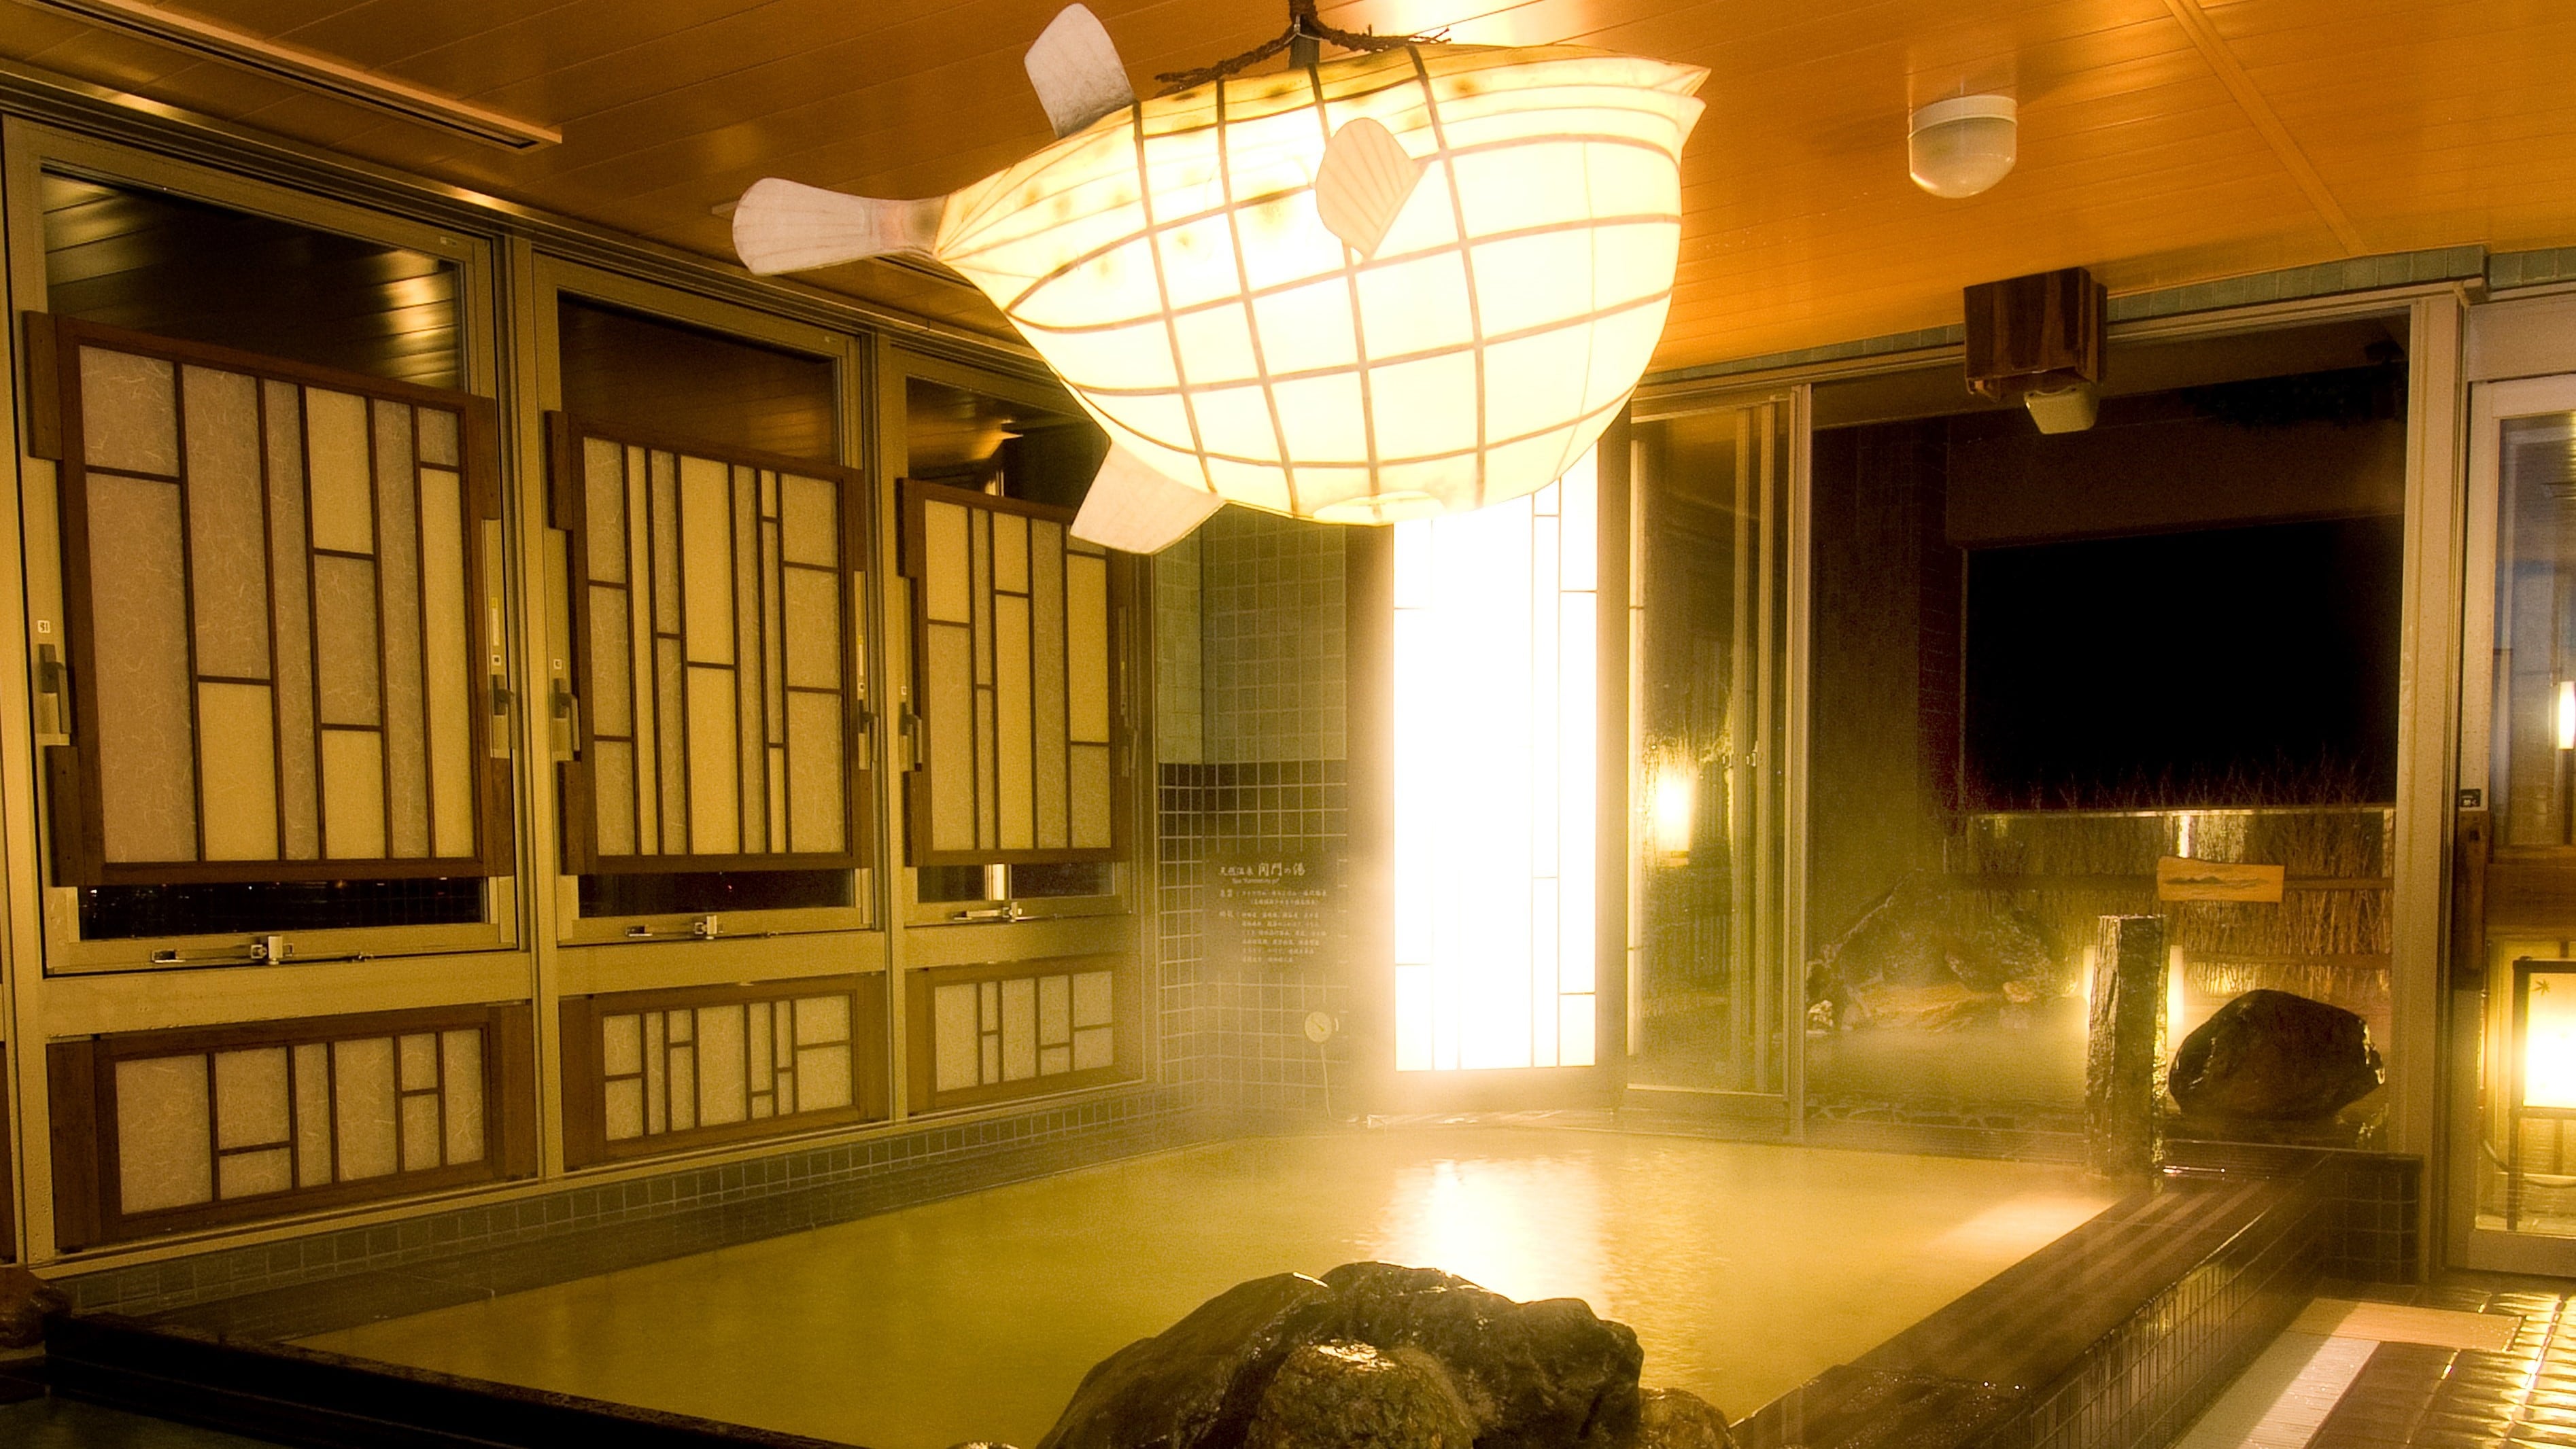 ◆《男士》室内浴池（热水温度40-41℃）【泉质】钠/氯化物强盐温泉